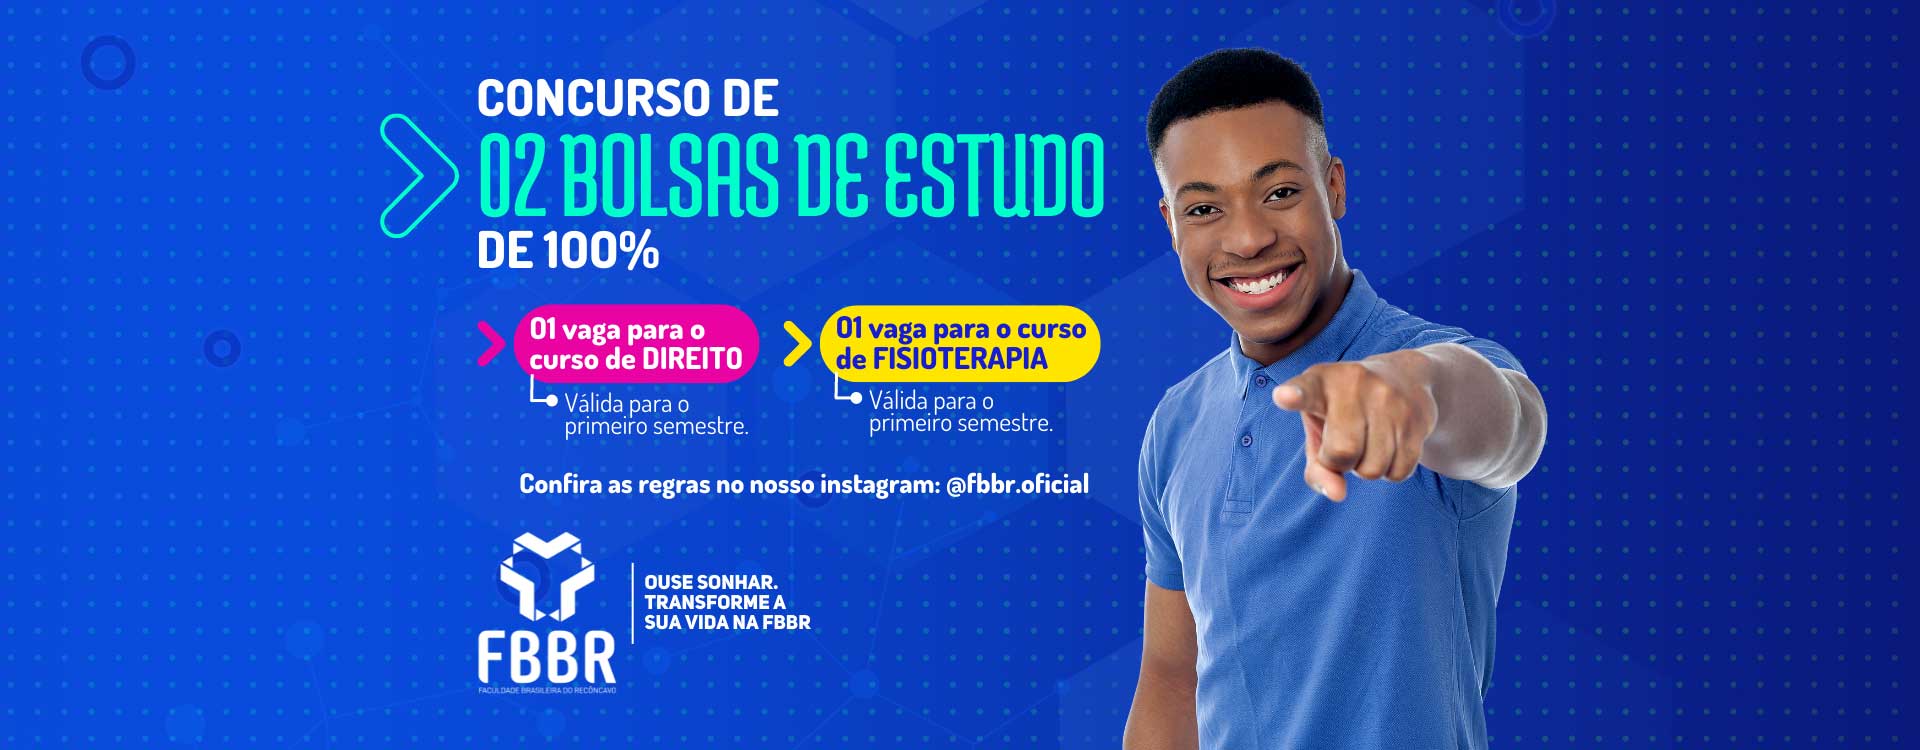 (c) Fbbr.com.br